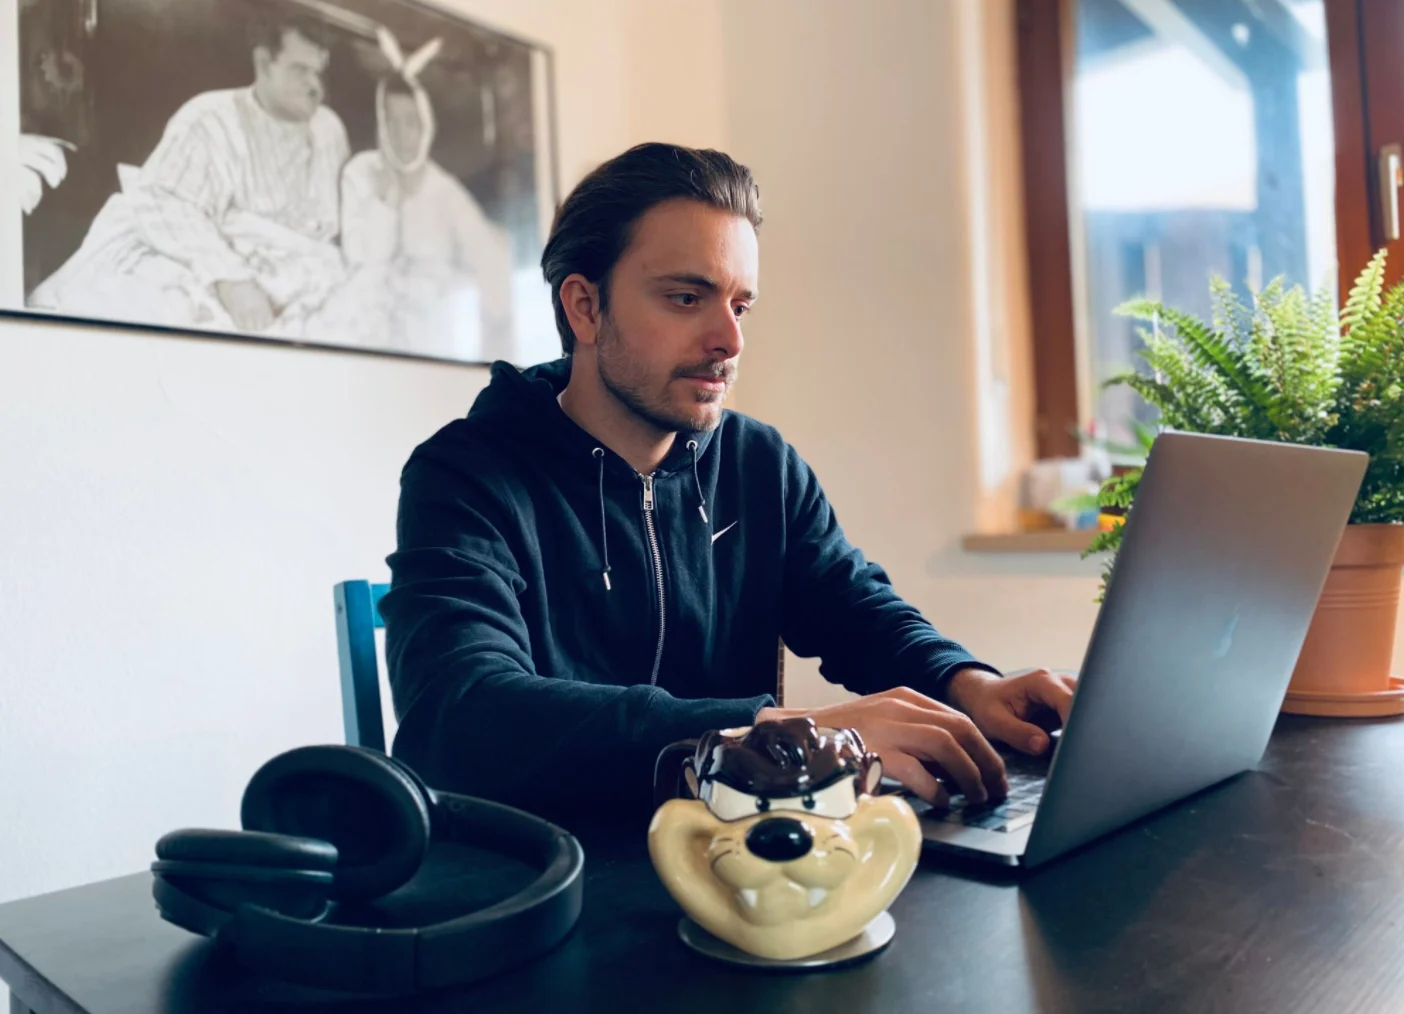 Kálmán working on a laptop